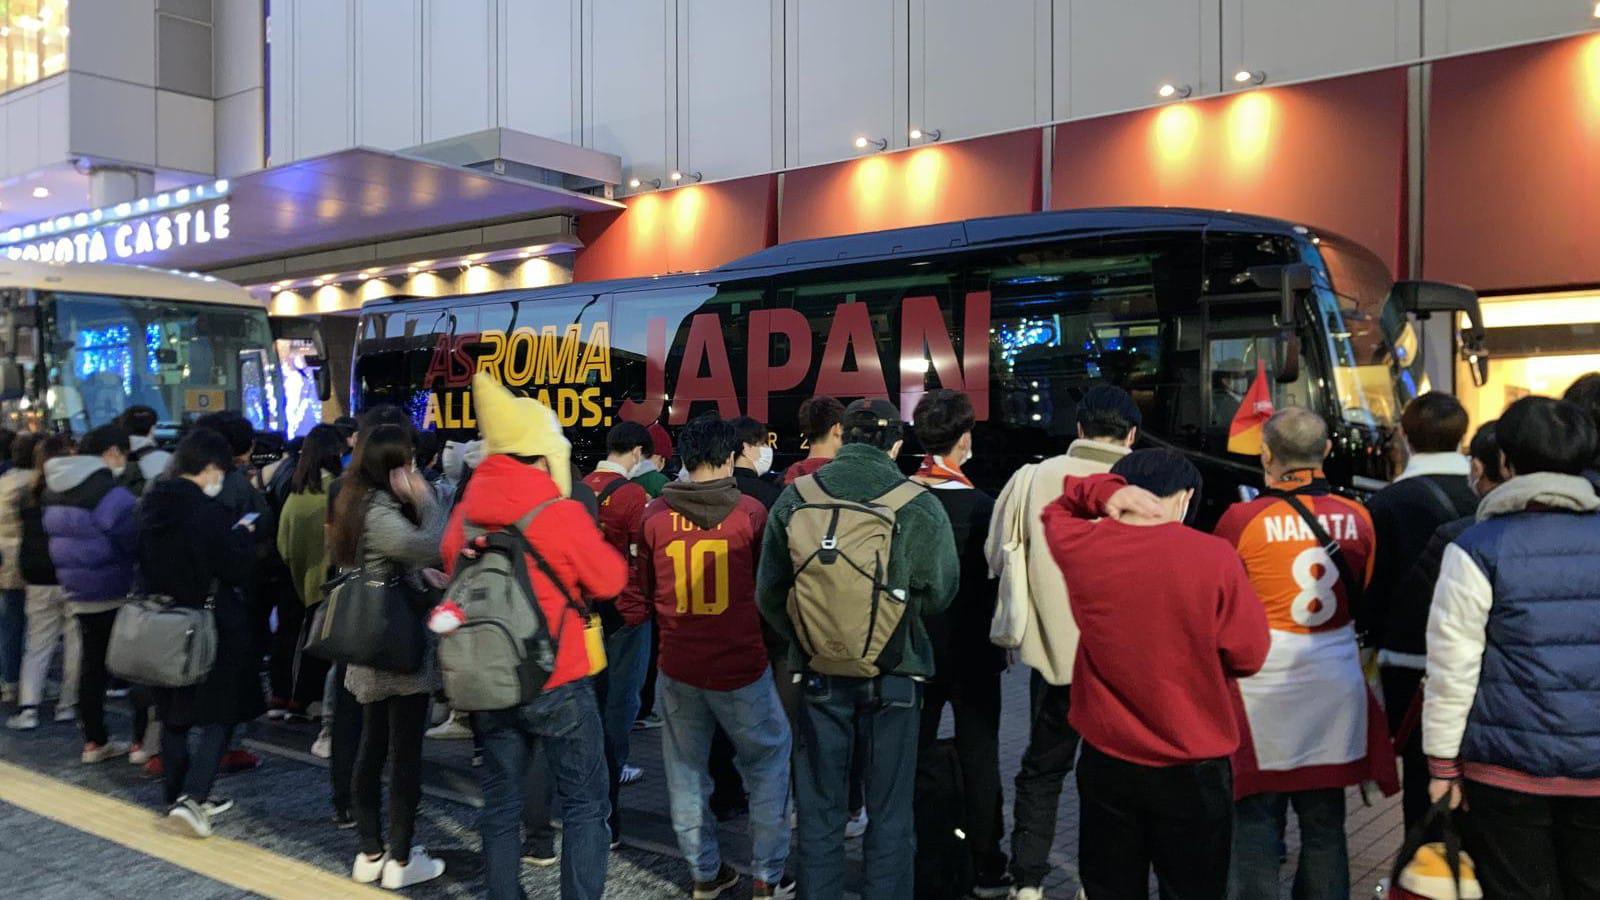 La Roma è arrivata a Nagoya: alle 11.30 il primo match in Giappone. Grande entusiasmo dei tifosi (FOTO)